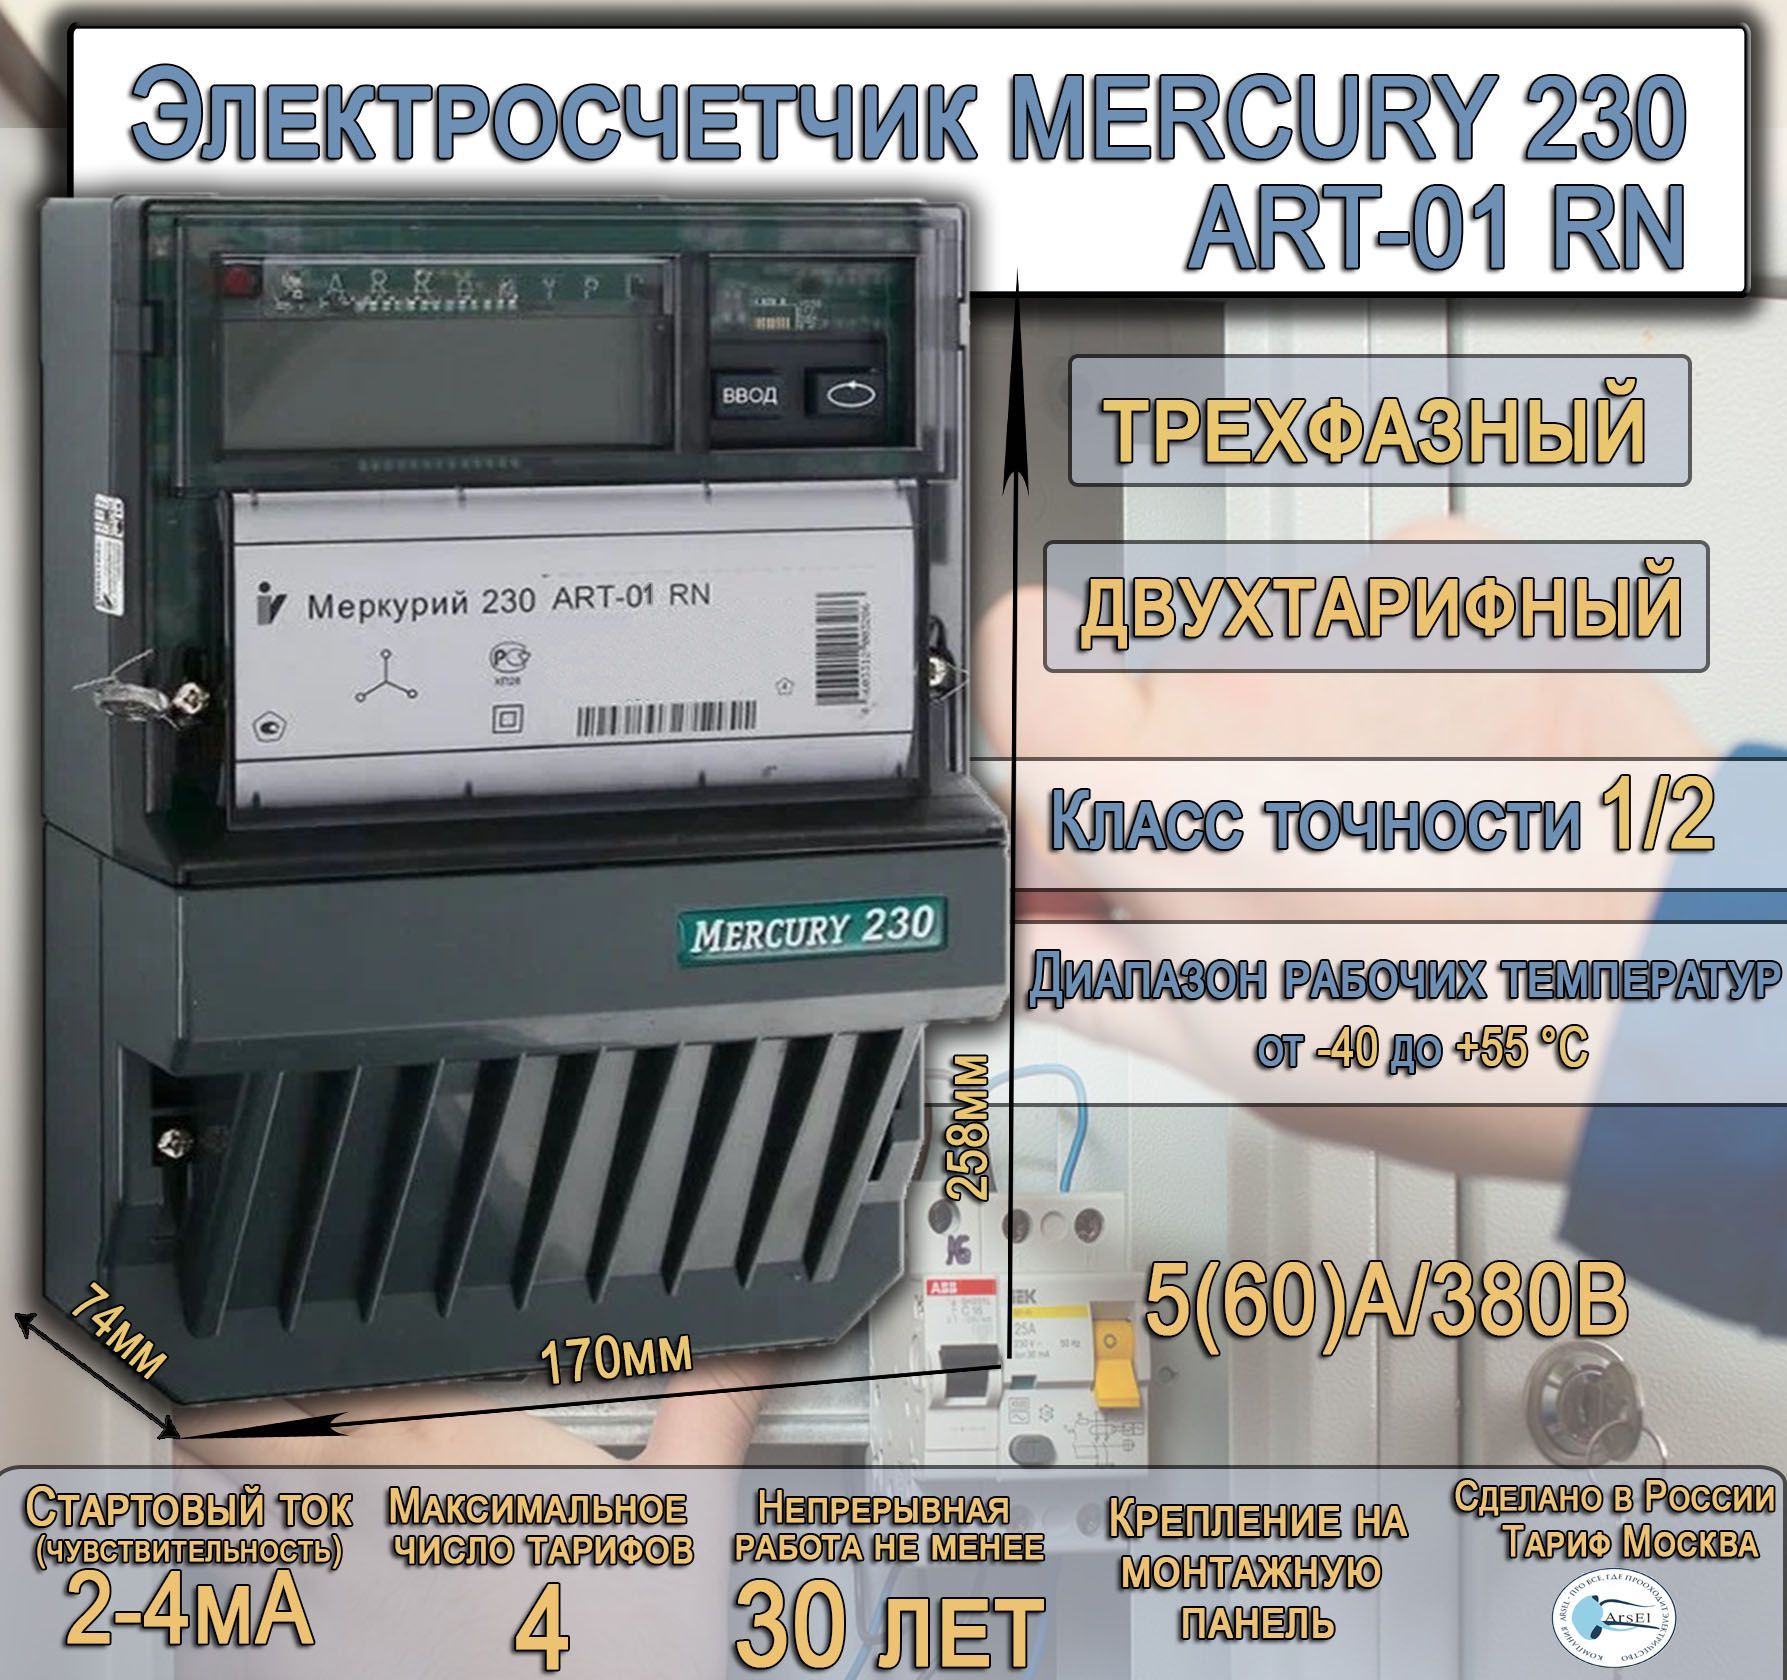 Характеристики электроэнергии. Incotex Меркурий 230 АR-02 R 10(100) А. Многотарифные счетчики электроэнергии меркурий